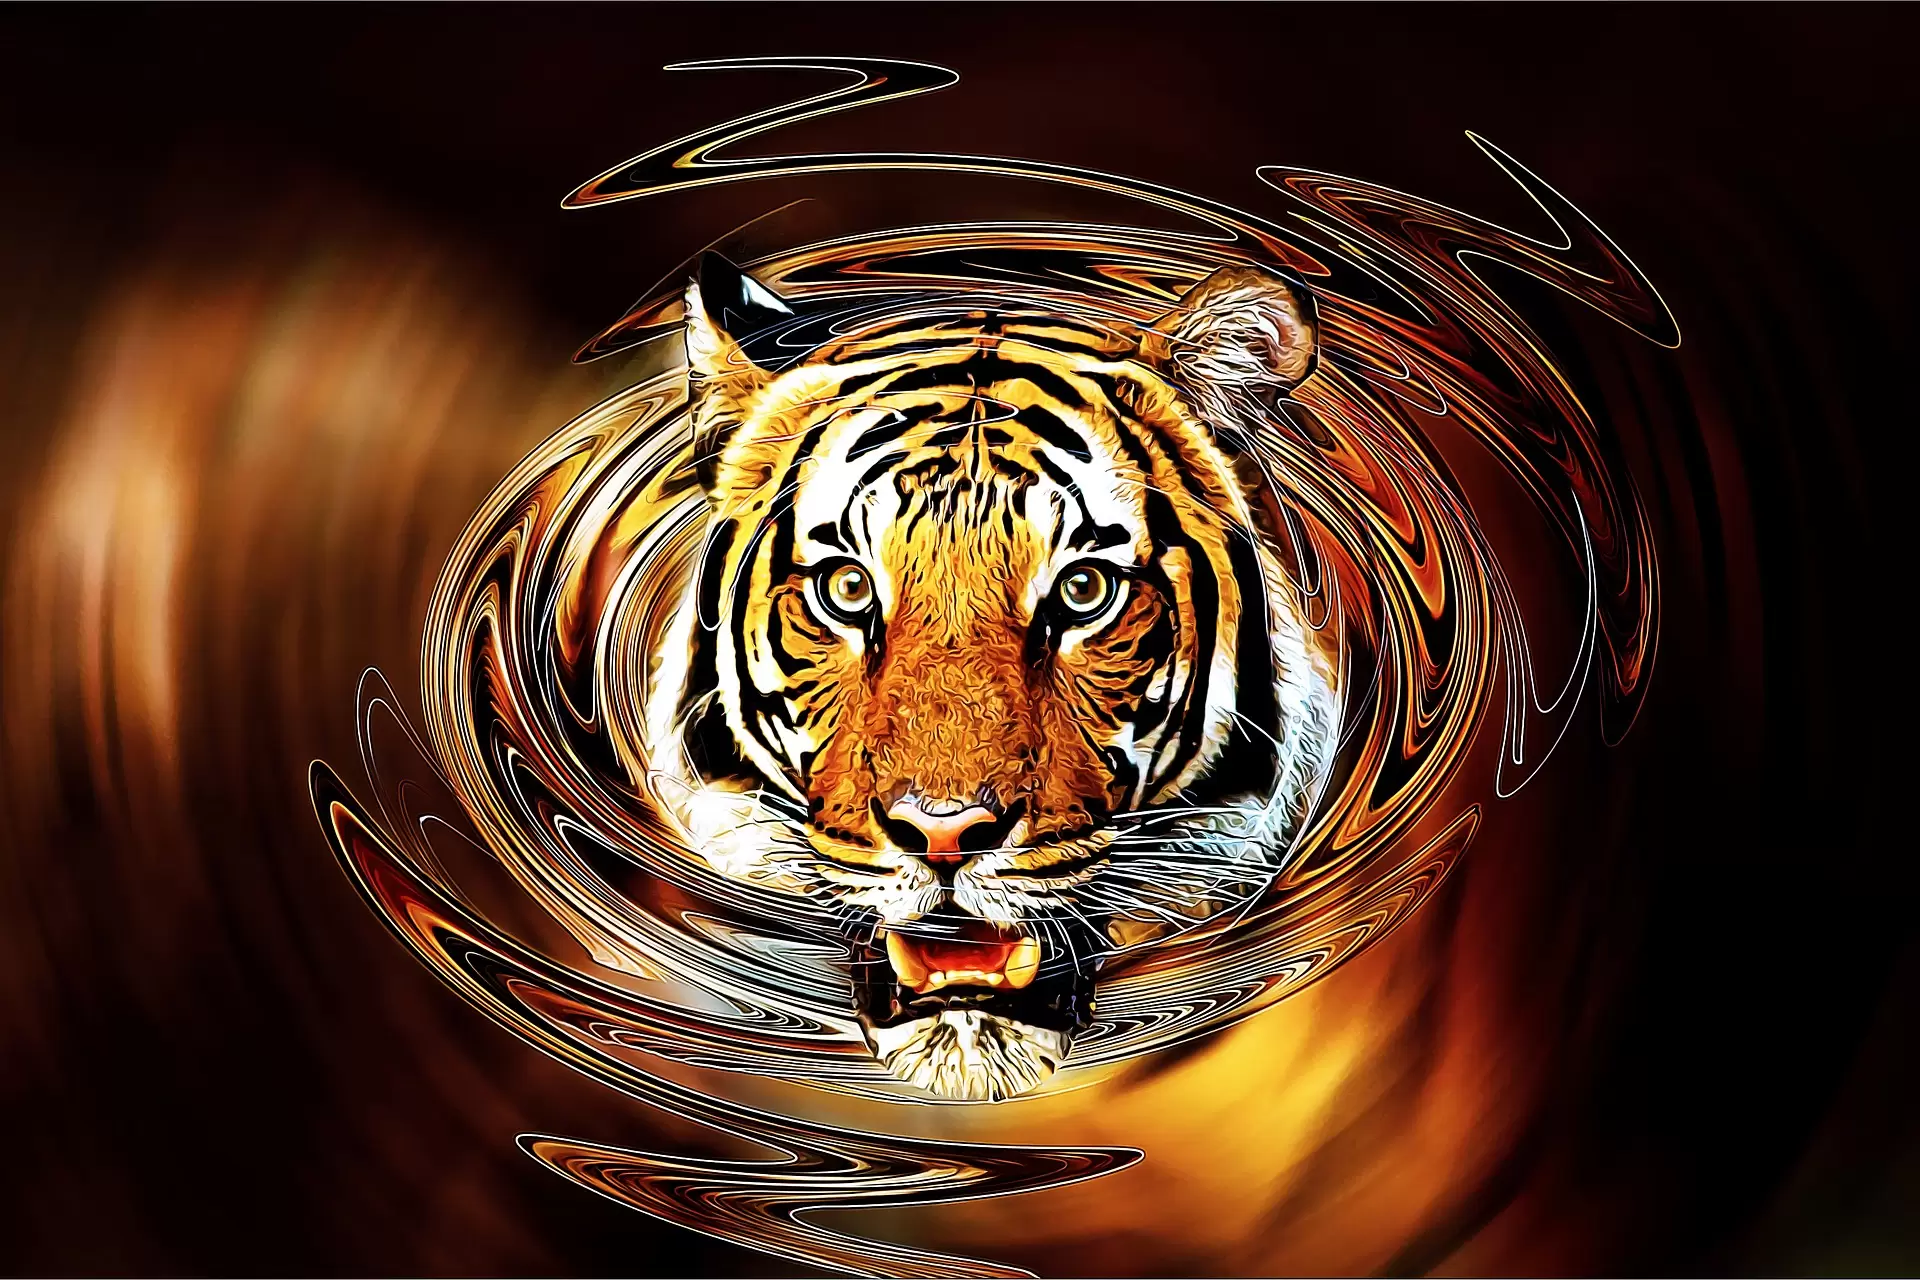 Wallpapers tiger rendering big cat on the desktop